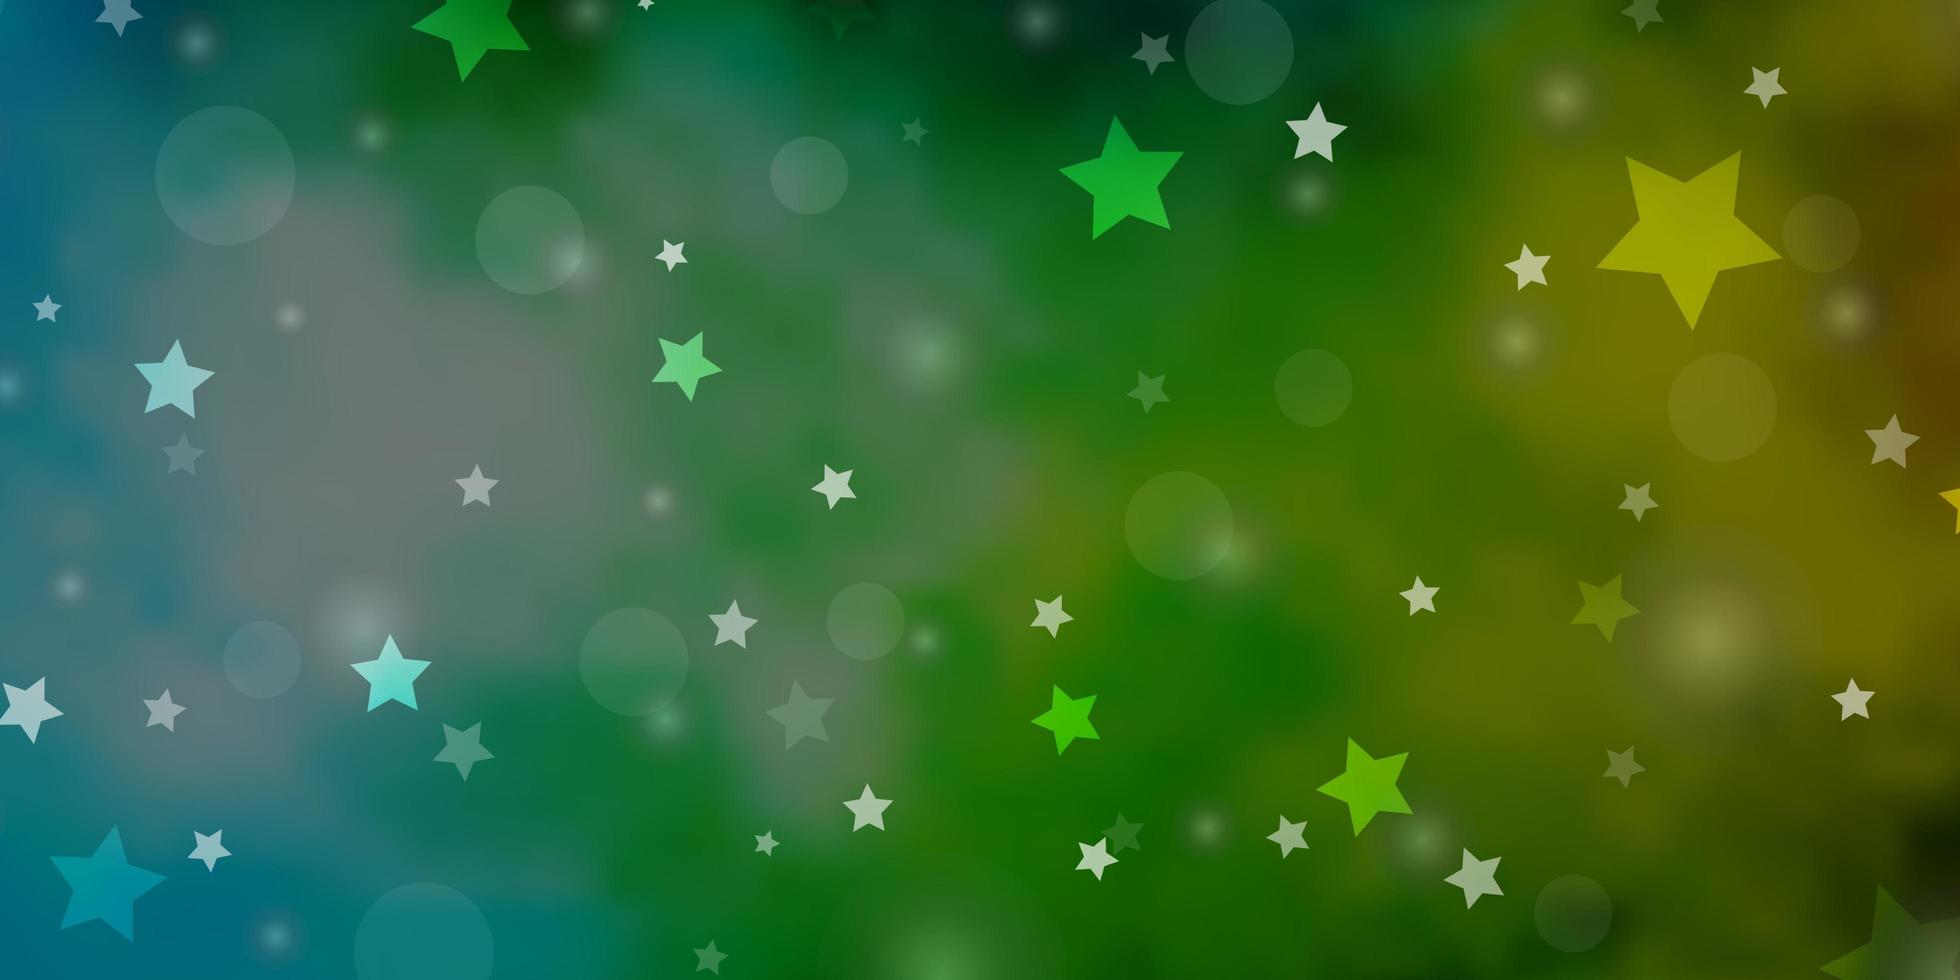 fond de vecteur bleu clair et vert avec des cercles, des étoiles. illustration avec ensemble de sphères abstraites colorées, étoiles. modèle pour cartes de visite, sites Web.